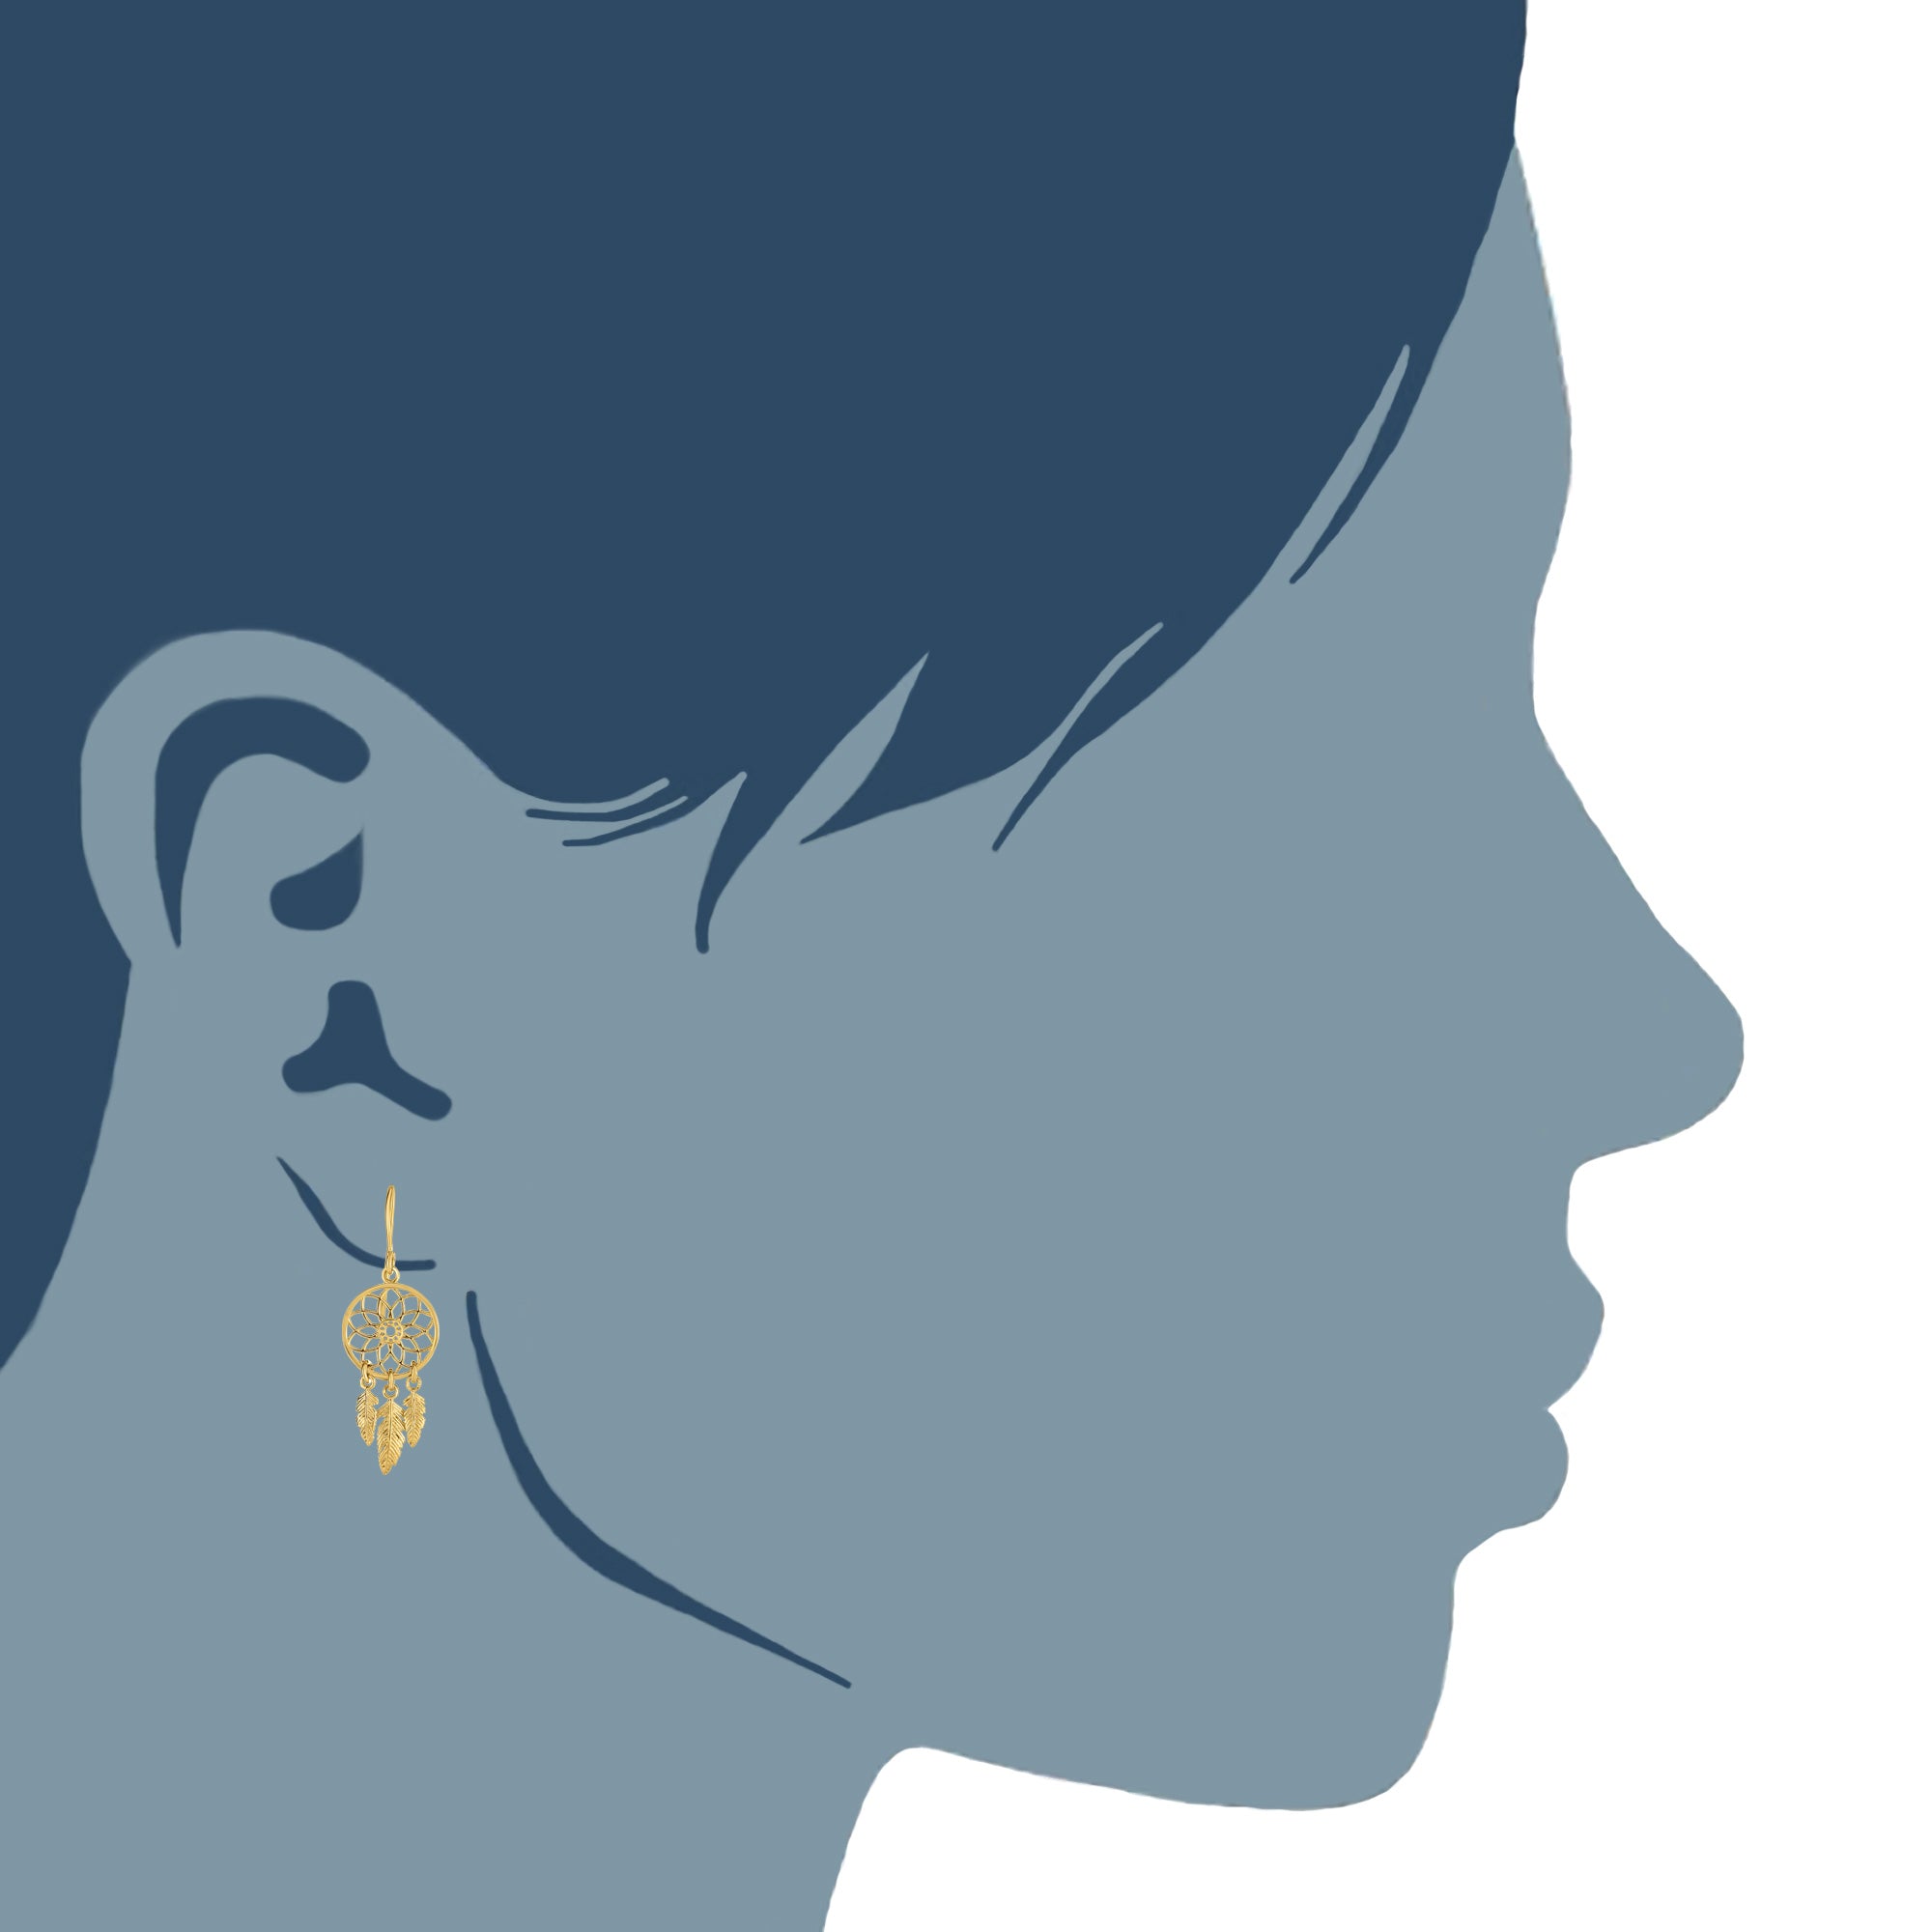 Boucles d'oreilles lustre attrape-rêves en or jaune 14 carats, bijoux de créateur fins pour hommes et femmes